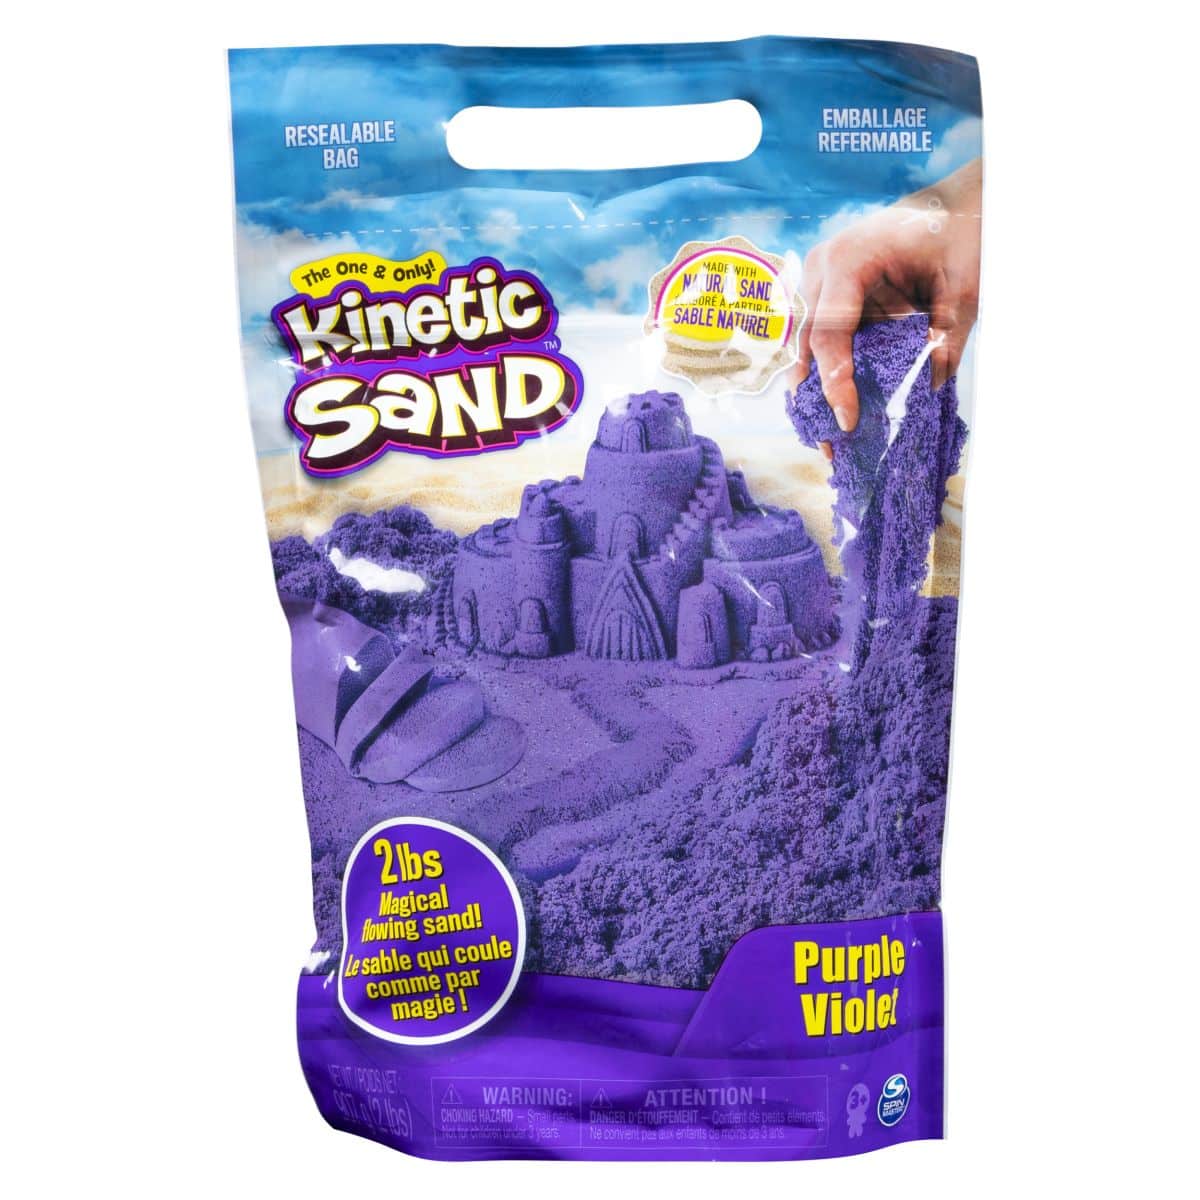 Kinetic Sand Surprise mit 113 g Kinetic Sand, Tierfigur und Zubehör